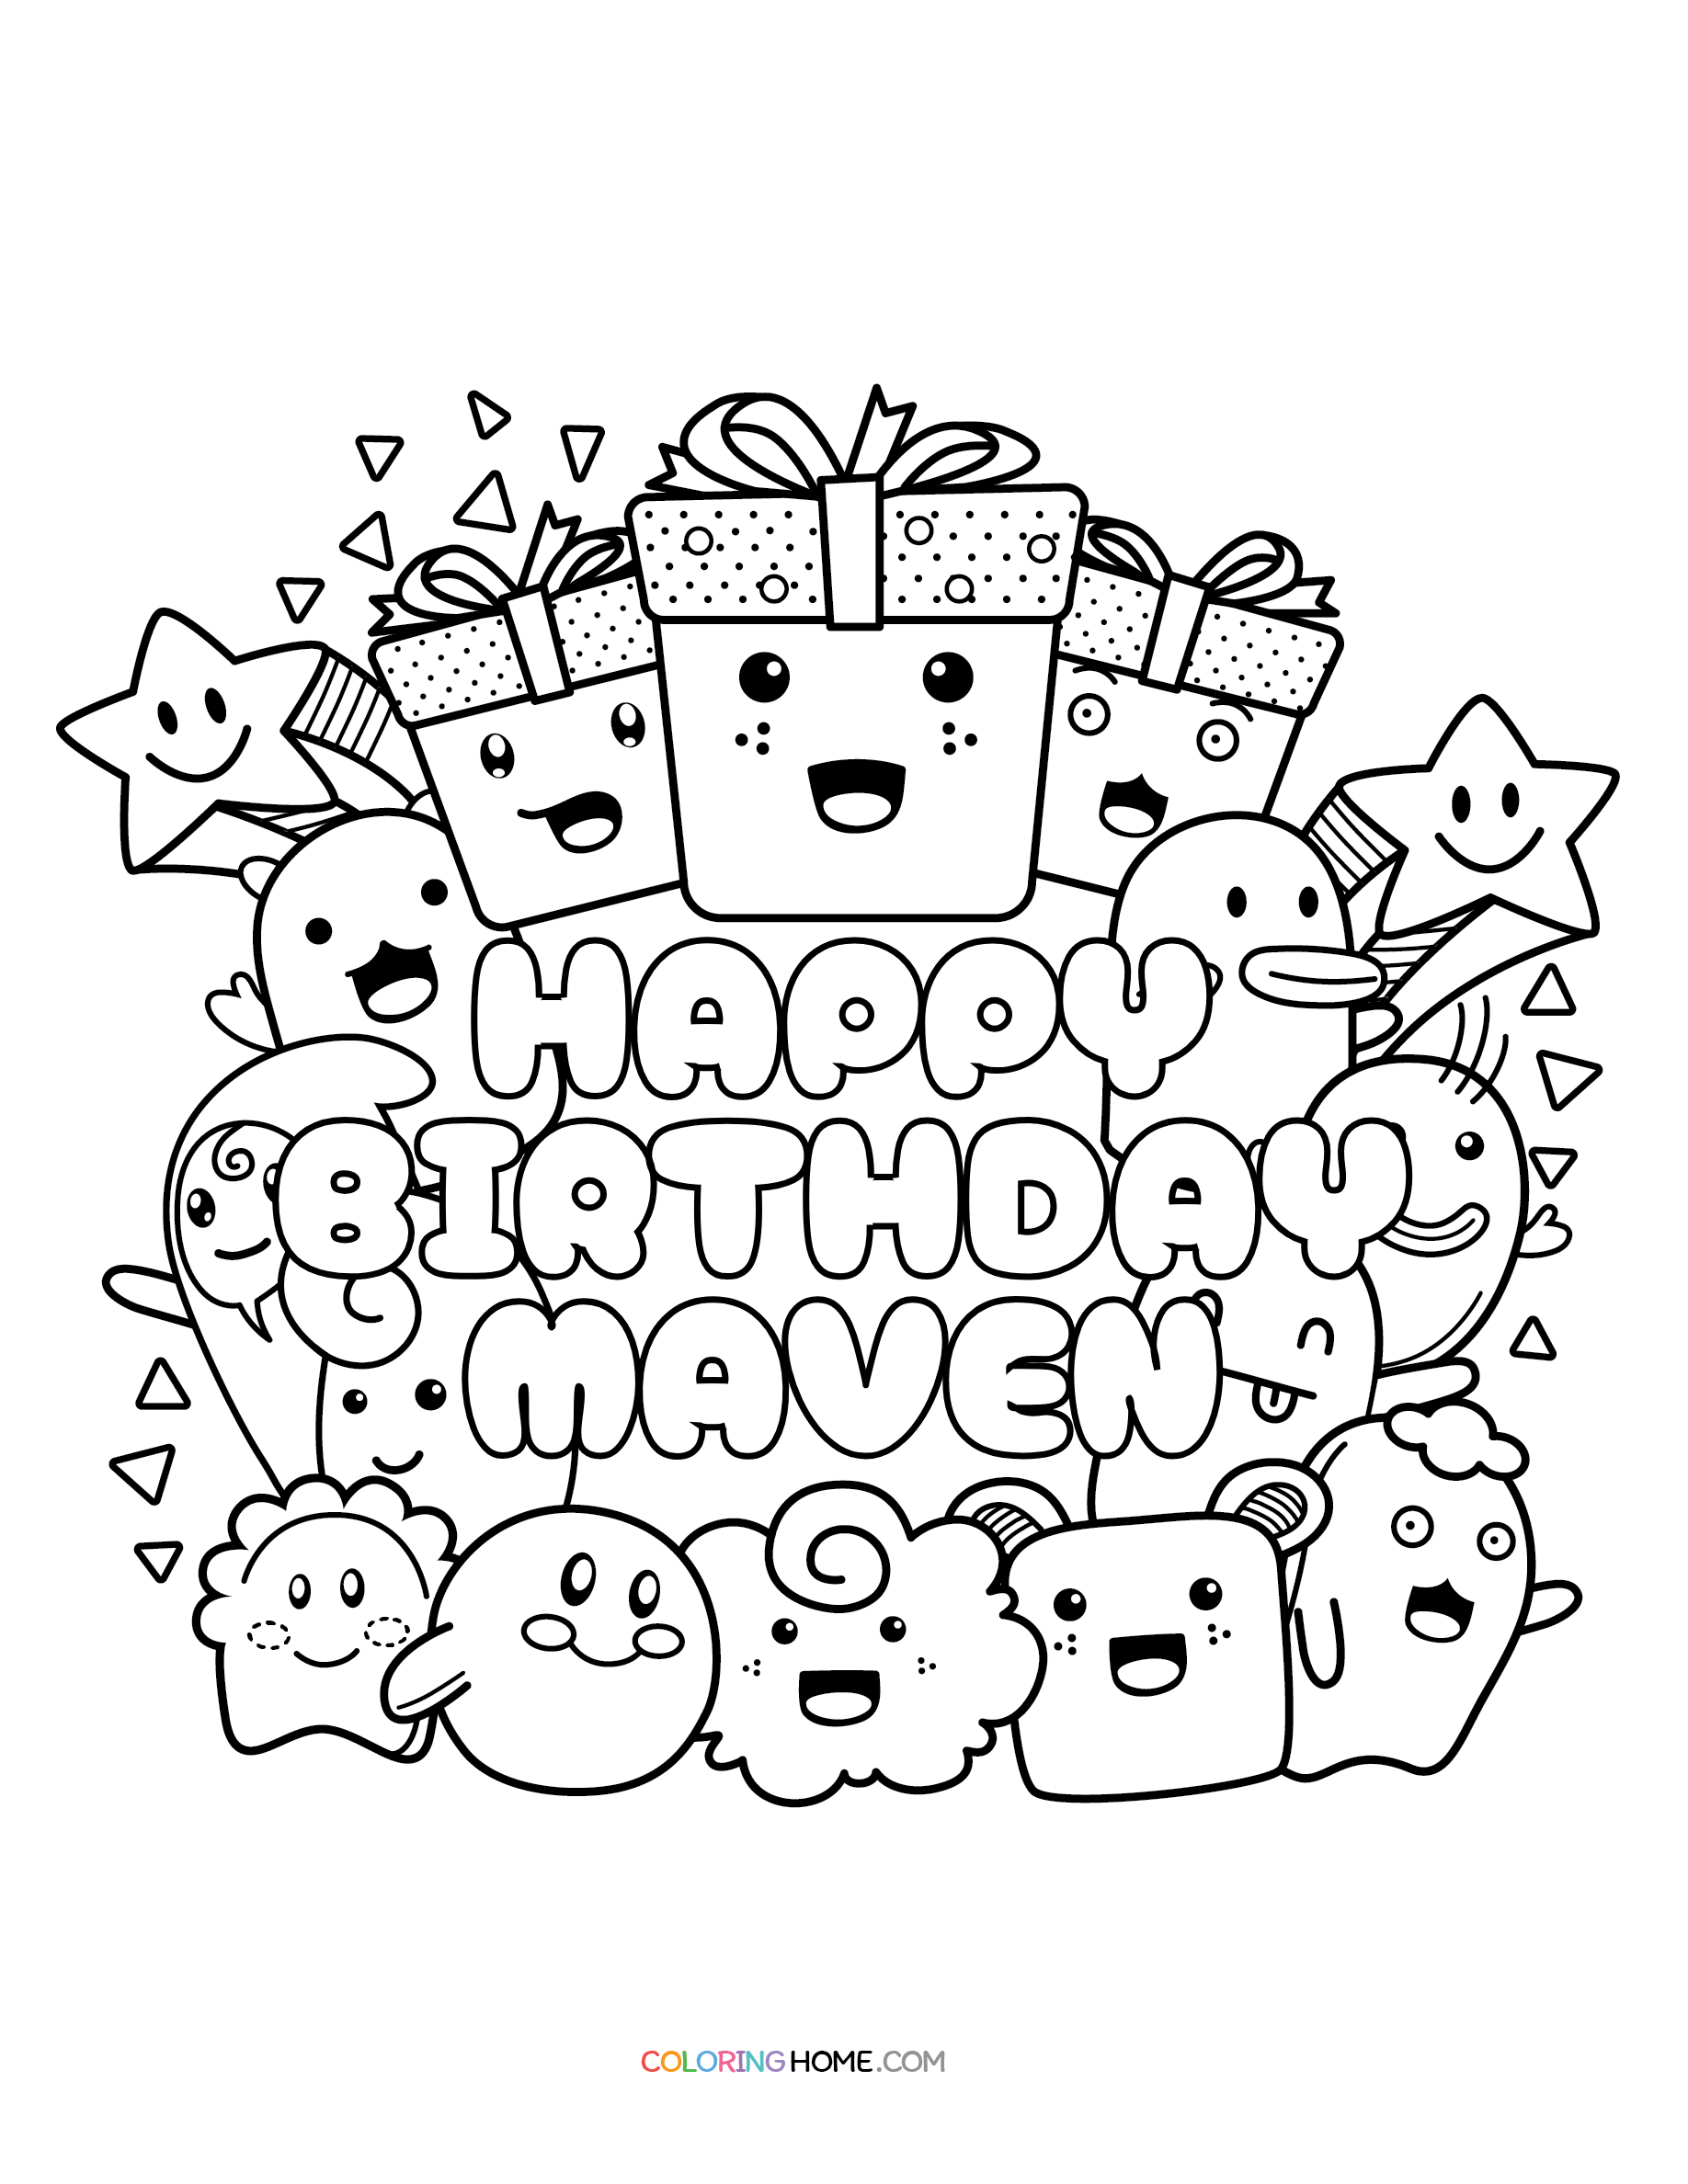 Happy Birthday Maven coloring page